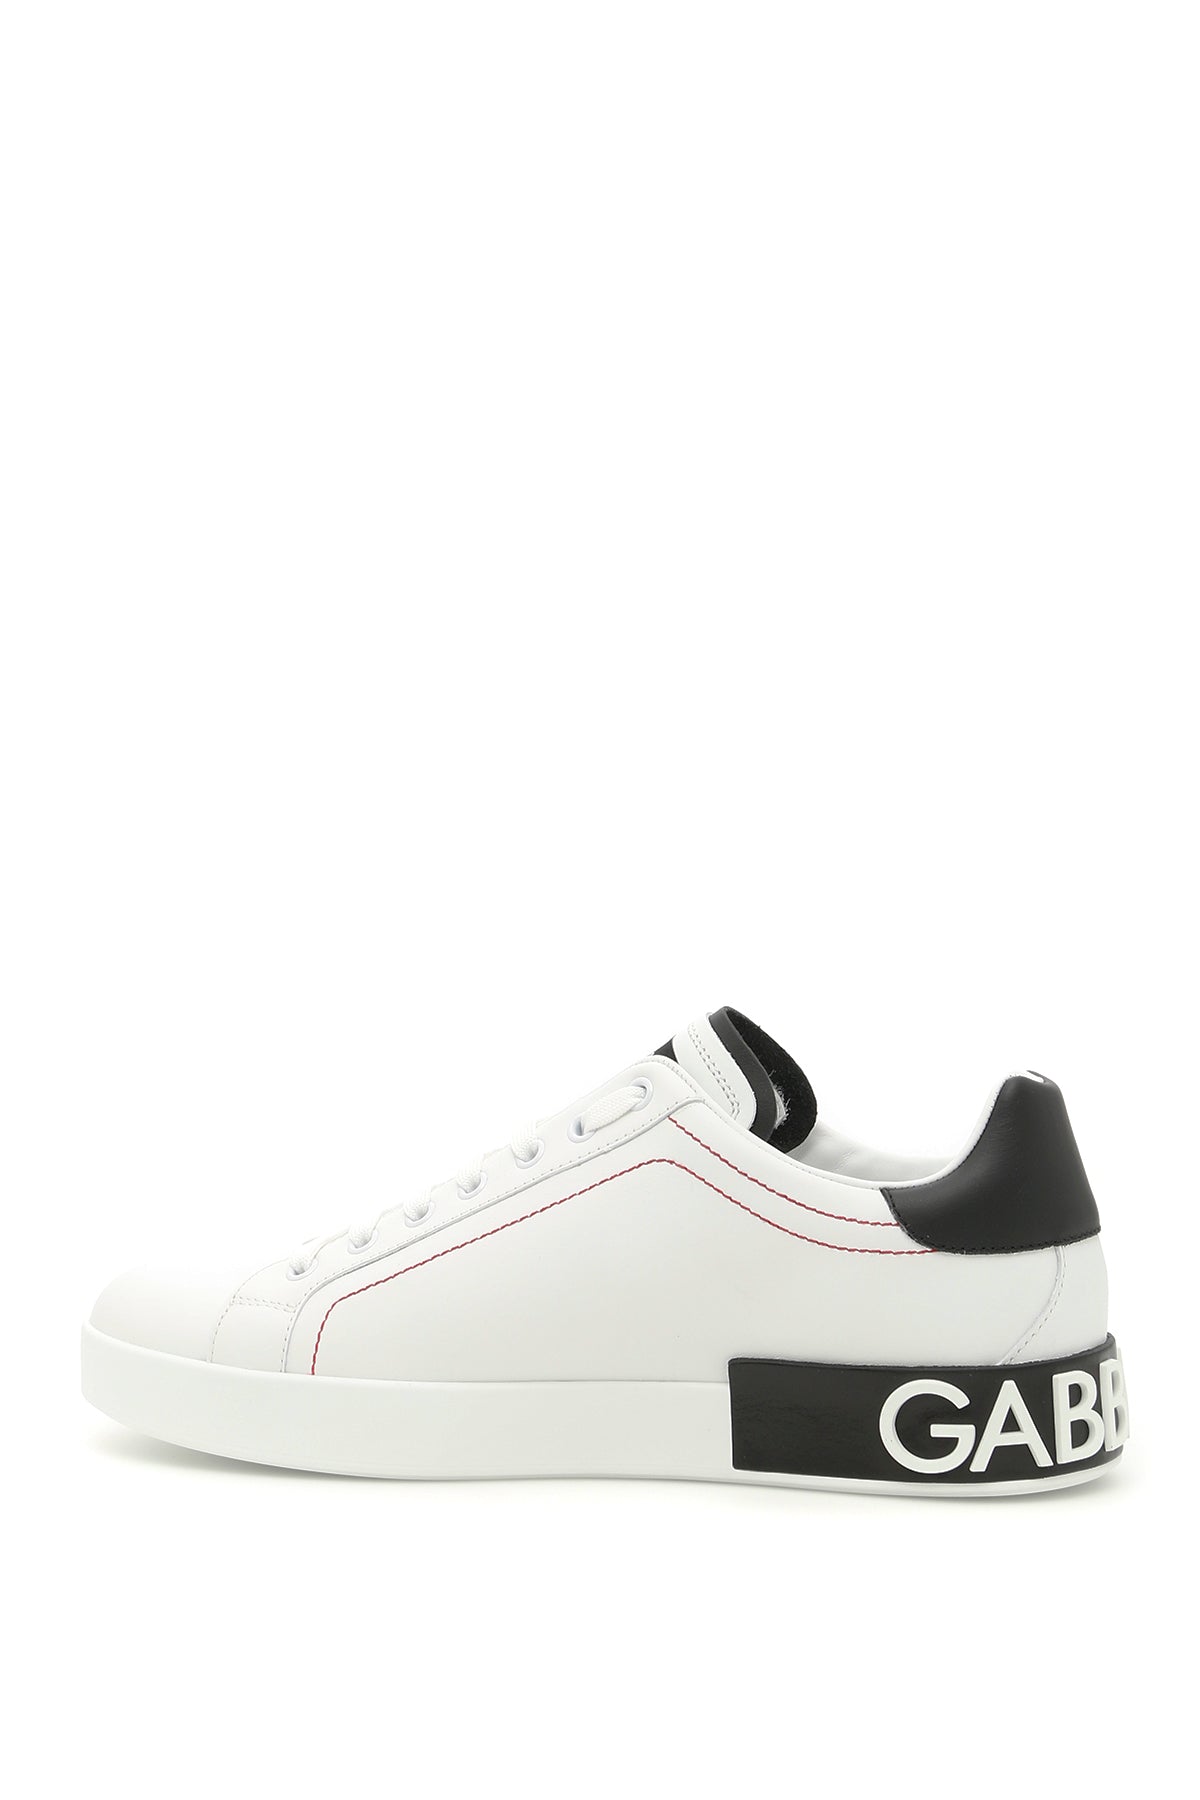 Dolce & Gabbana Portofino Nappa Leather Sneakers   White